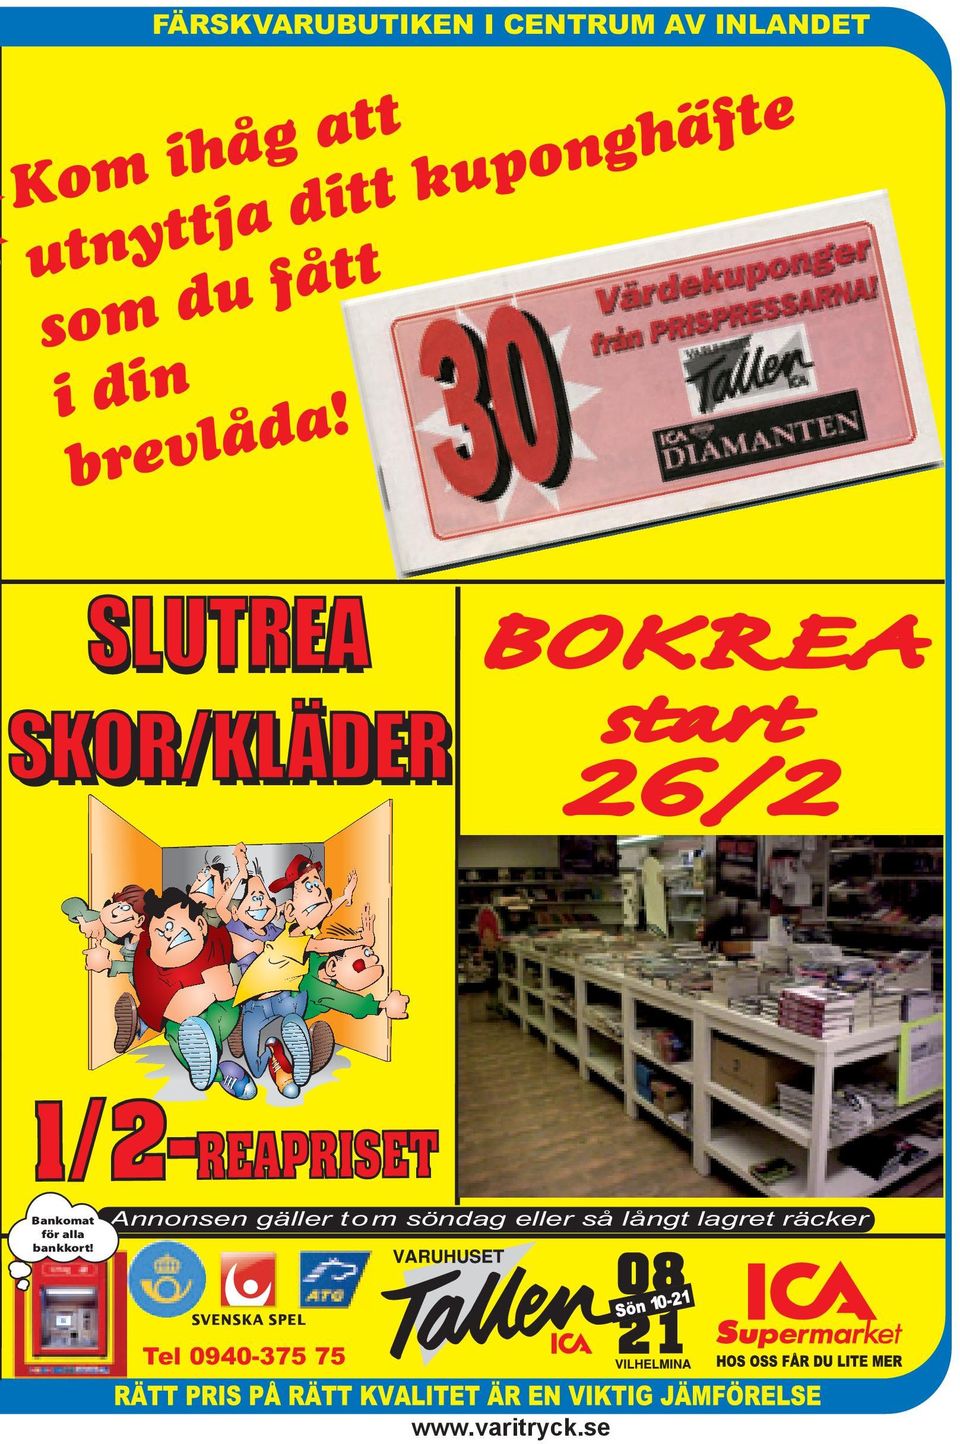 SLUTREA SKOR/KLÄDER BOKREA start 26/2 1/2-REAPRISET Bankomat för